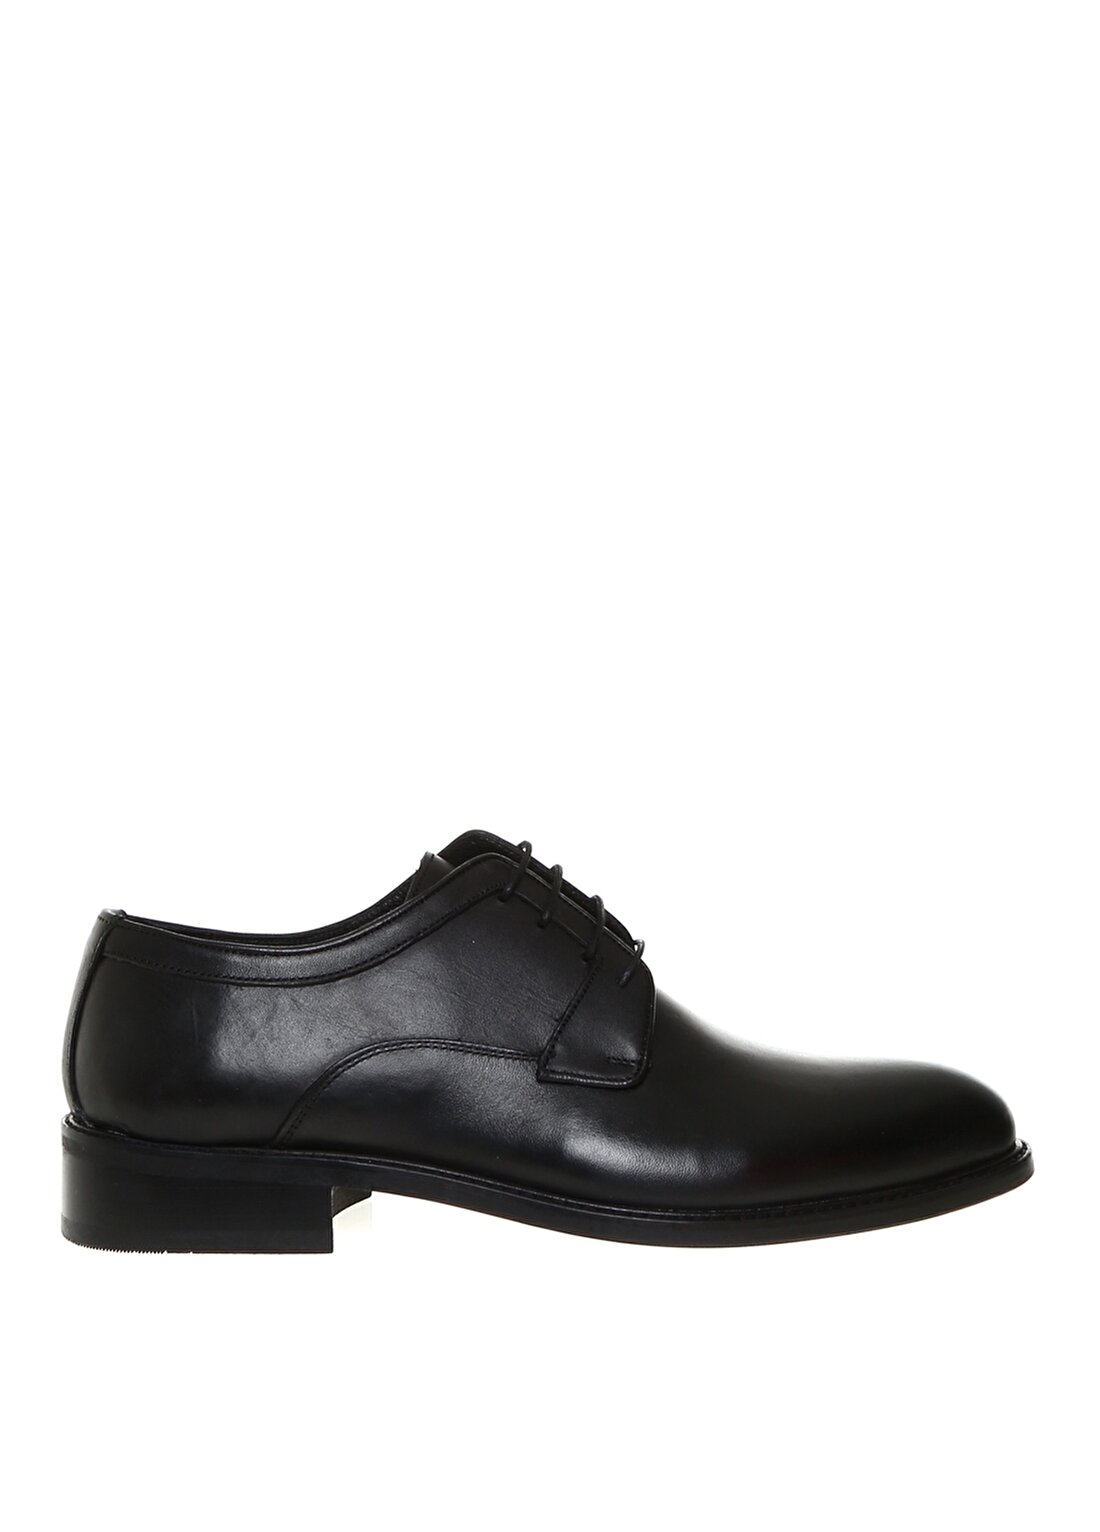 Cotton Bar Erkek Deri Siyah Klasik Ayakkabı